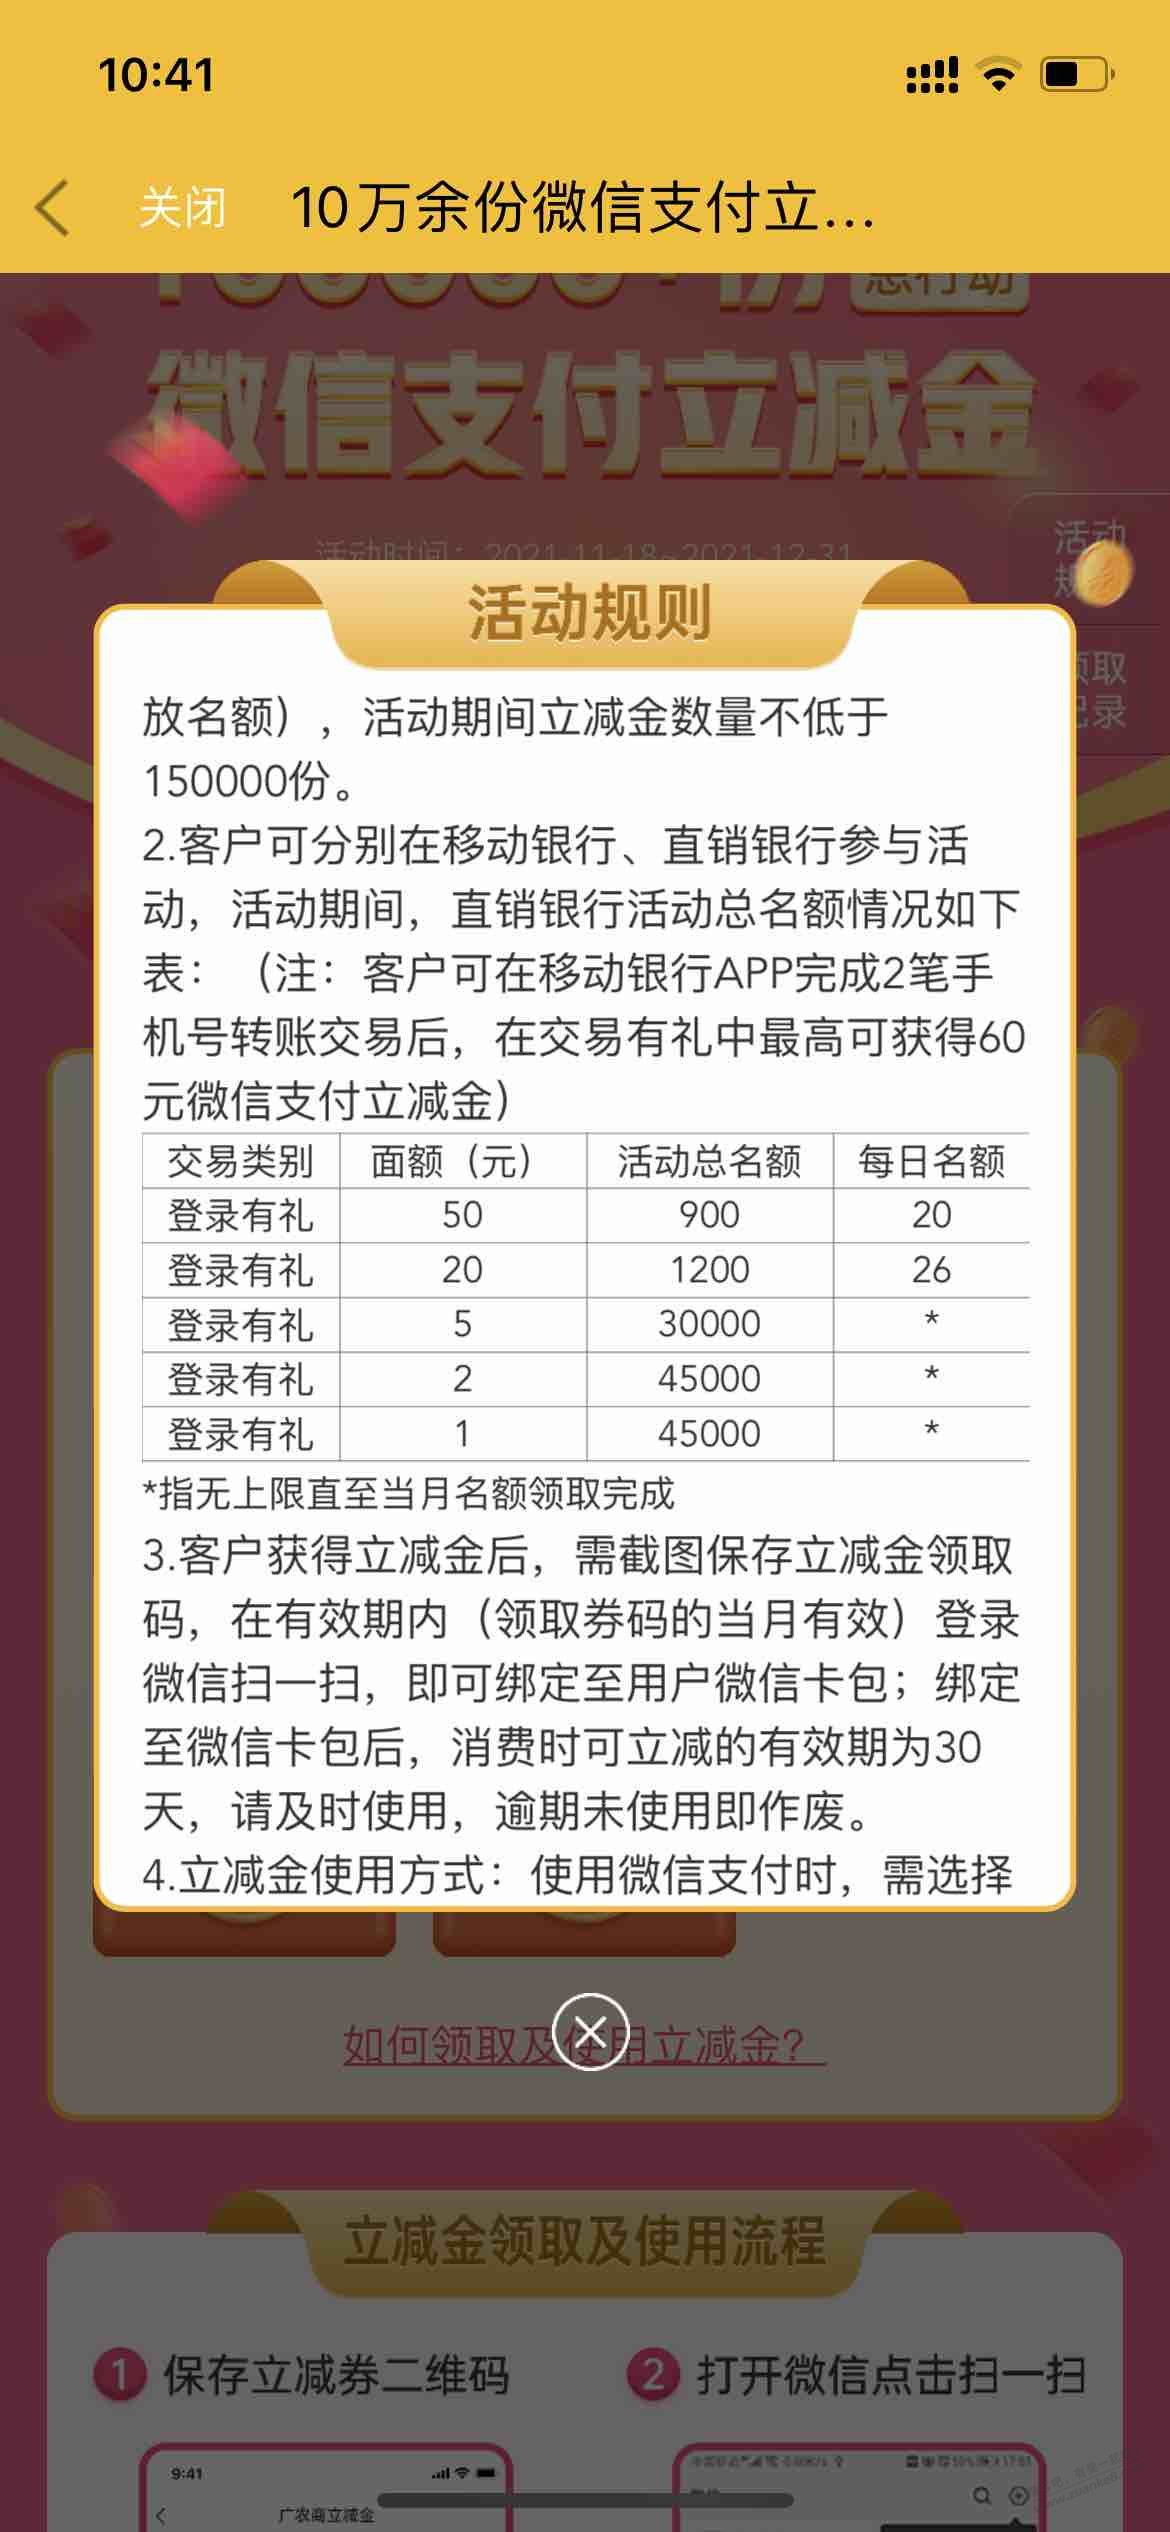 珠江直销银行瞬间少了3万个竞争对手。-惠小助(52huixz.com)